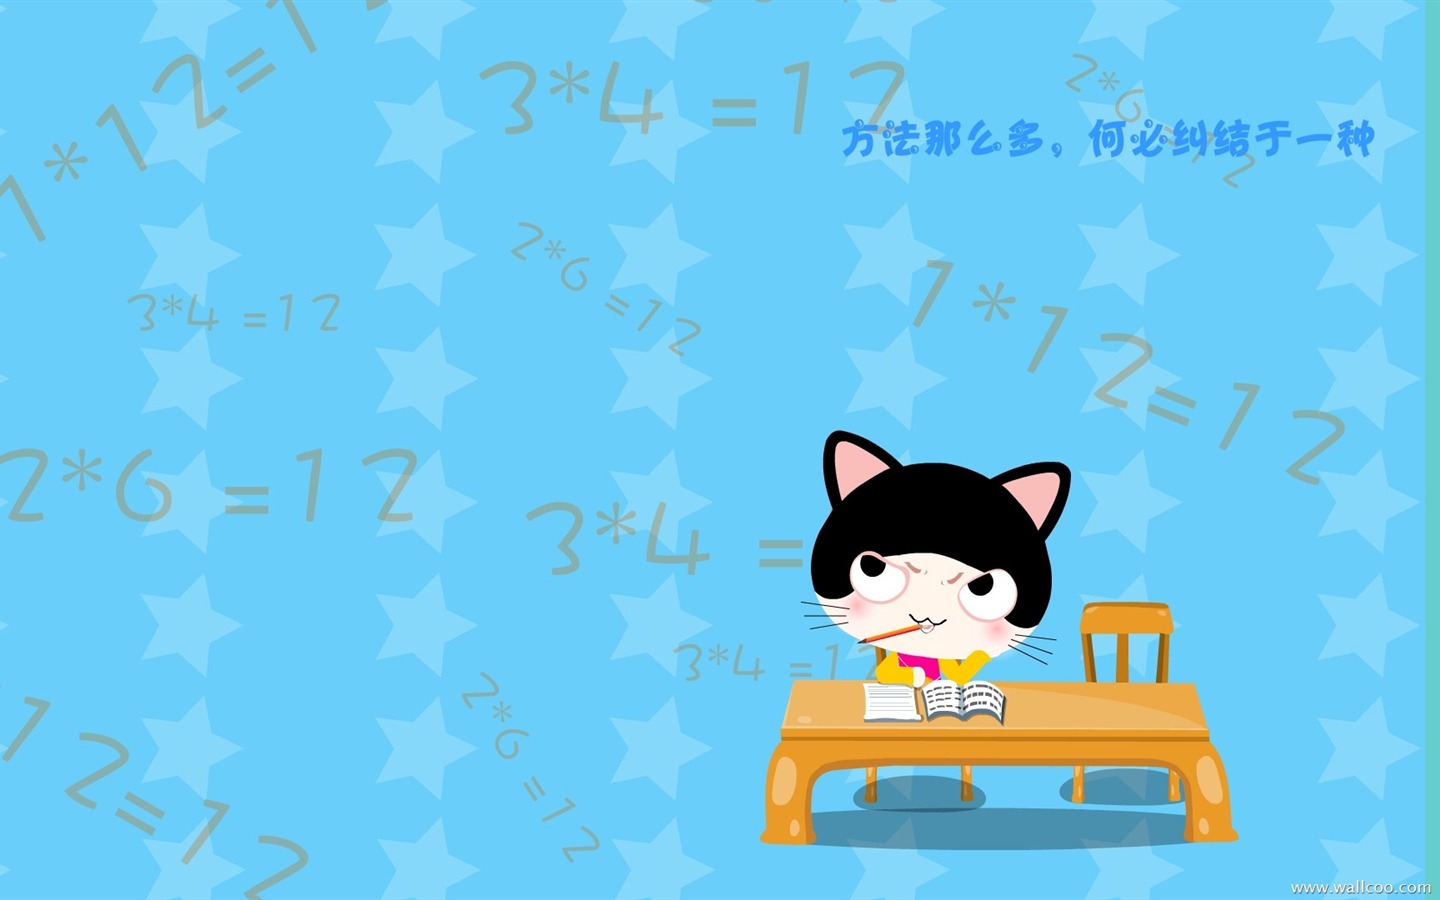 猫咪宝贝 卡通壁纸(四)3 - 1440x900